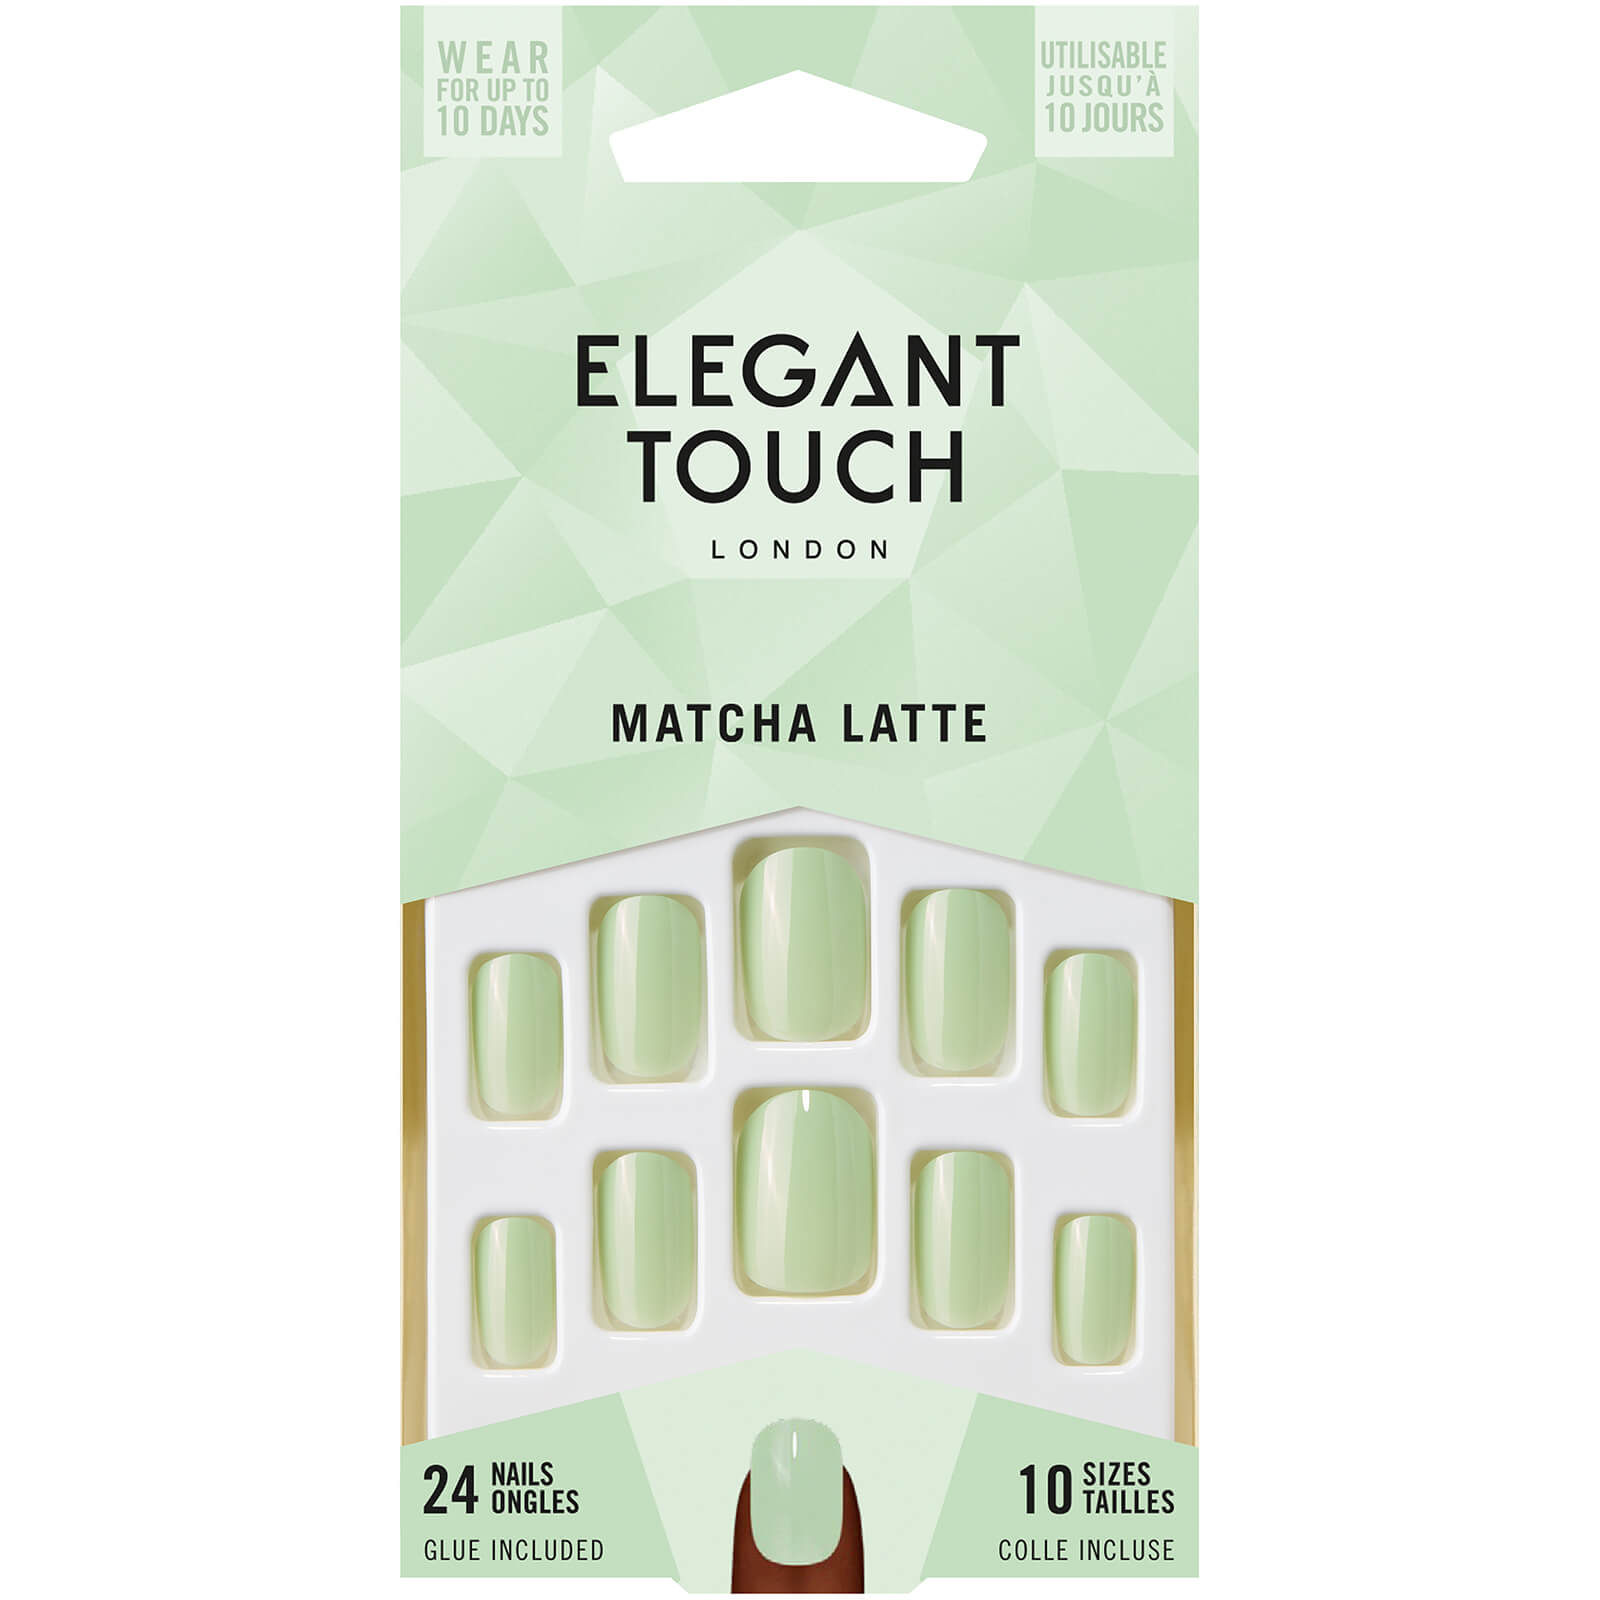 Elegant Touch False Nails – Matcha Latte lookfantastic.com imagine